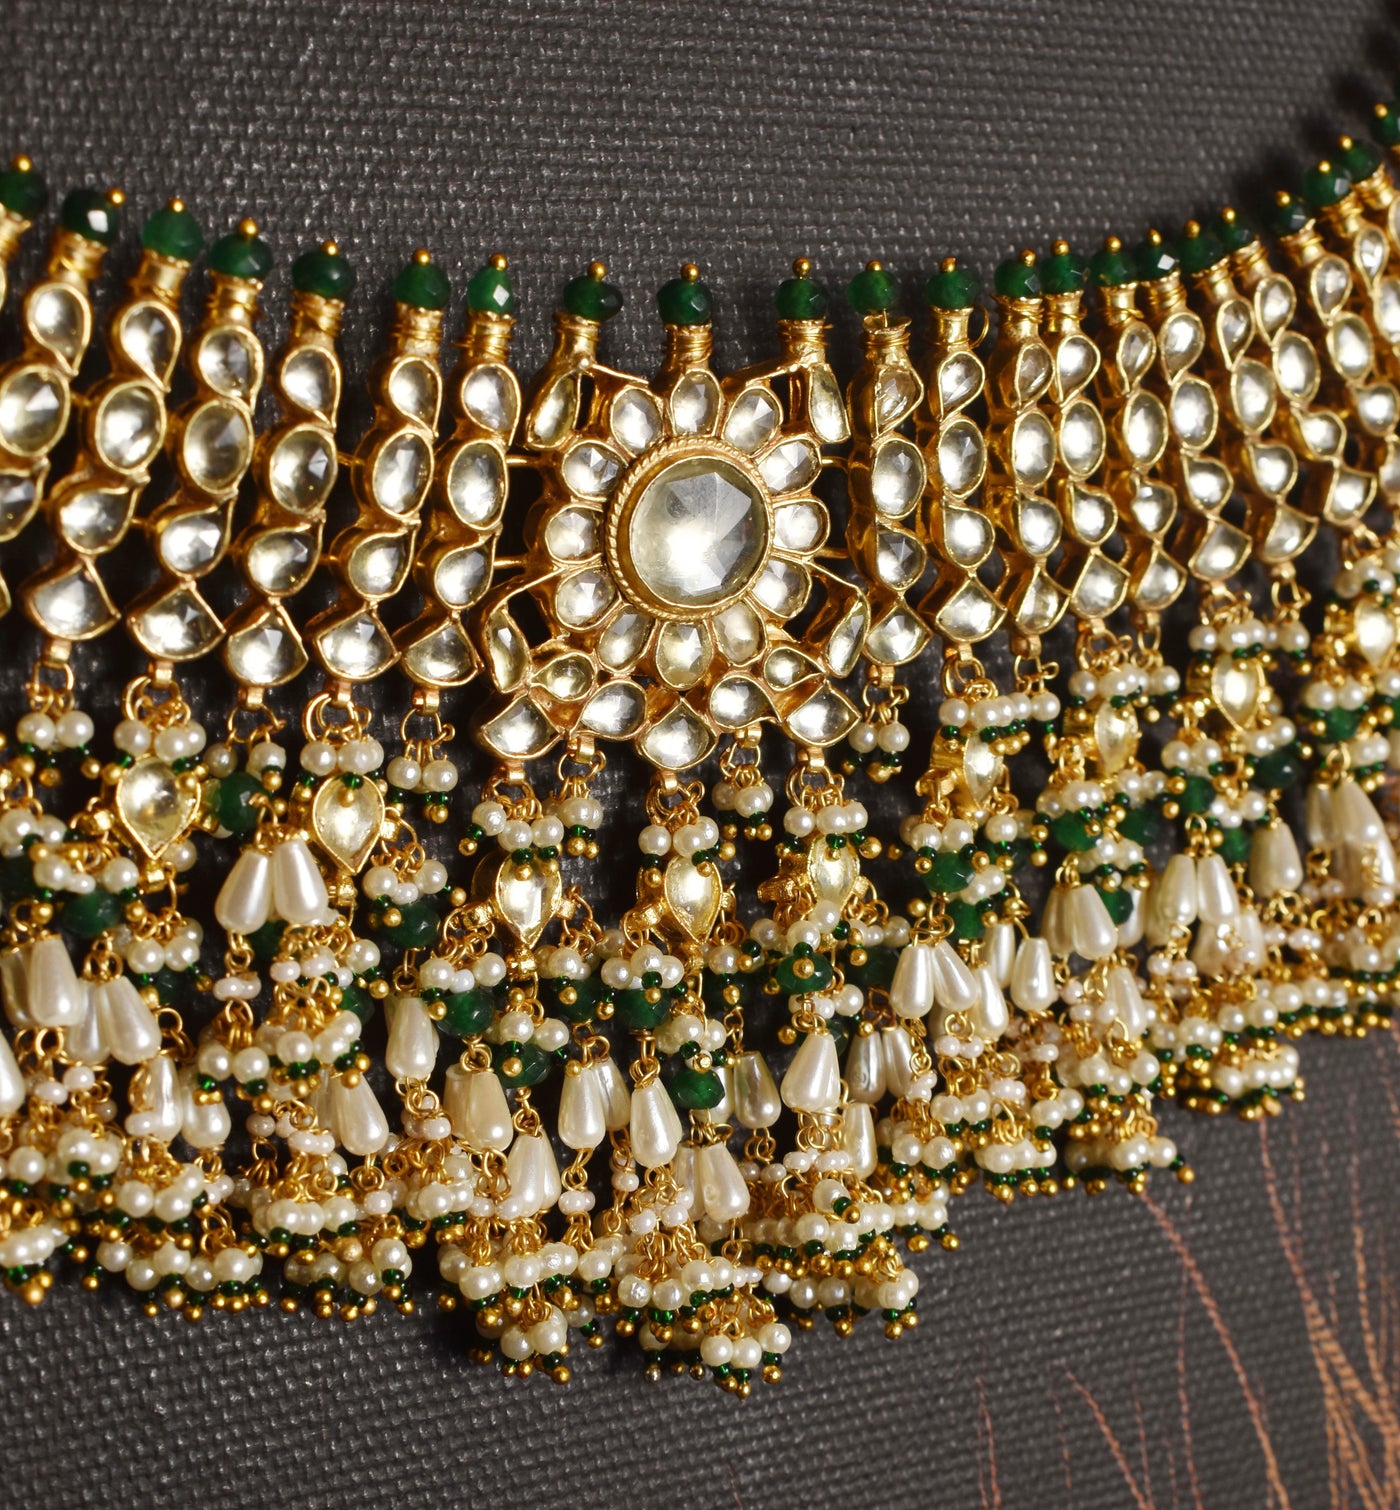 Iqra necklace set